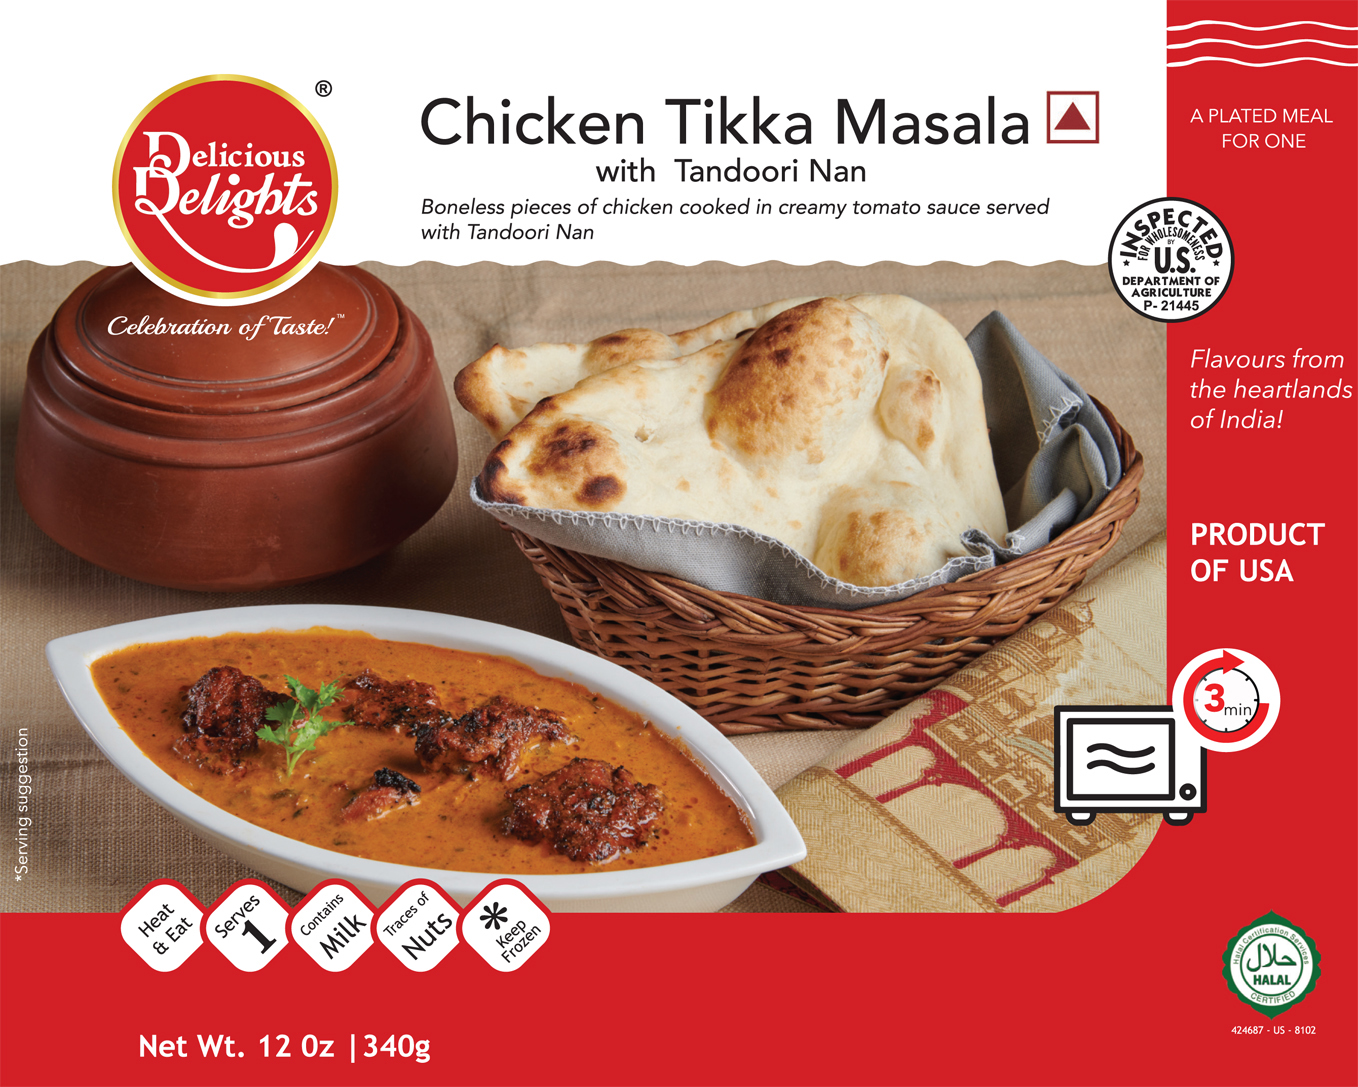 Delicious Delights Chicken Tikka Masala with Tandoori Nan